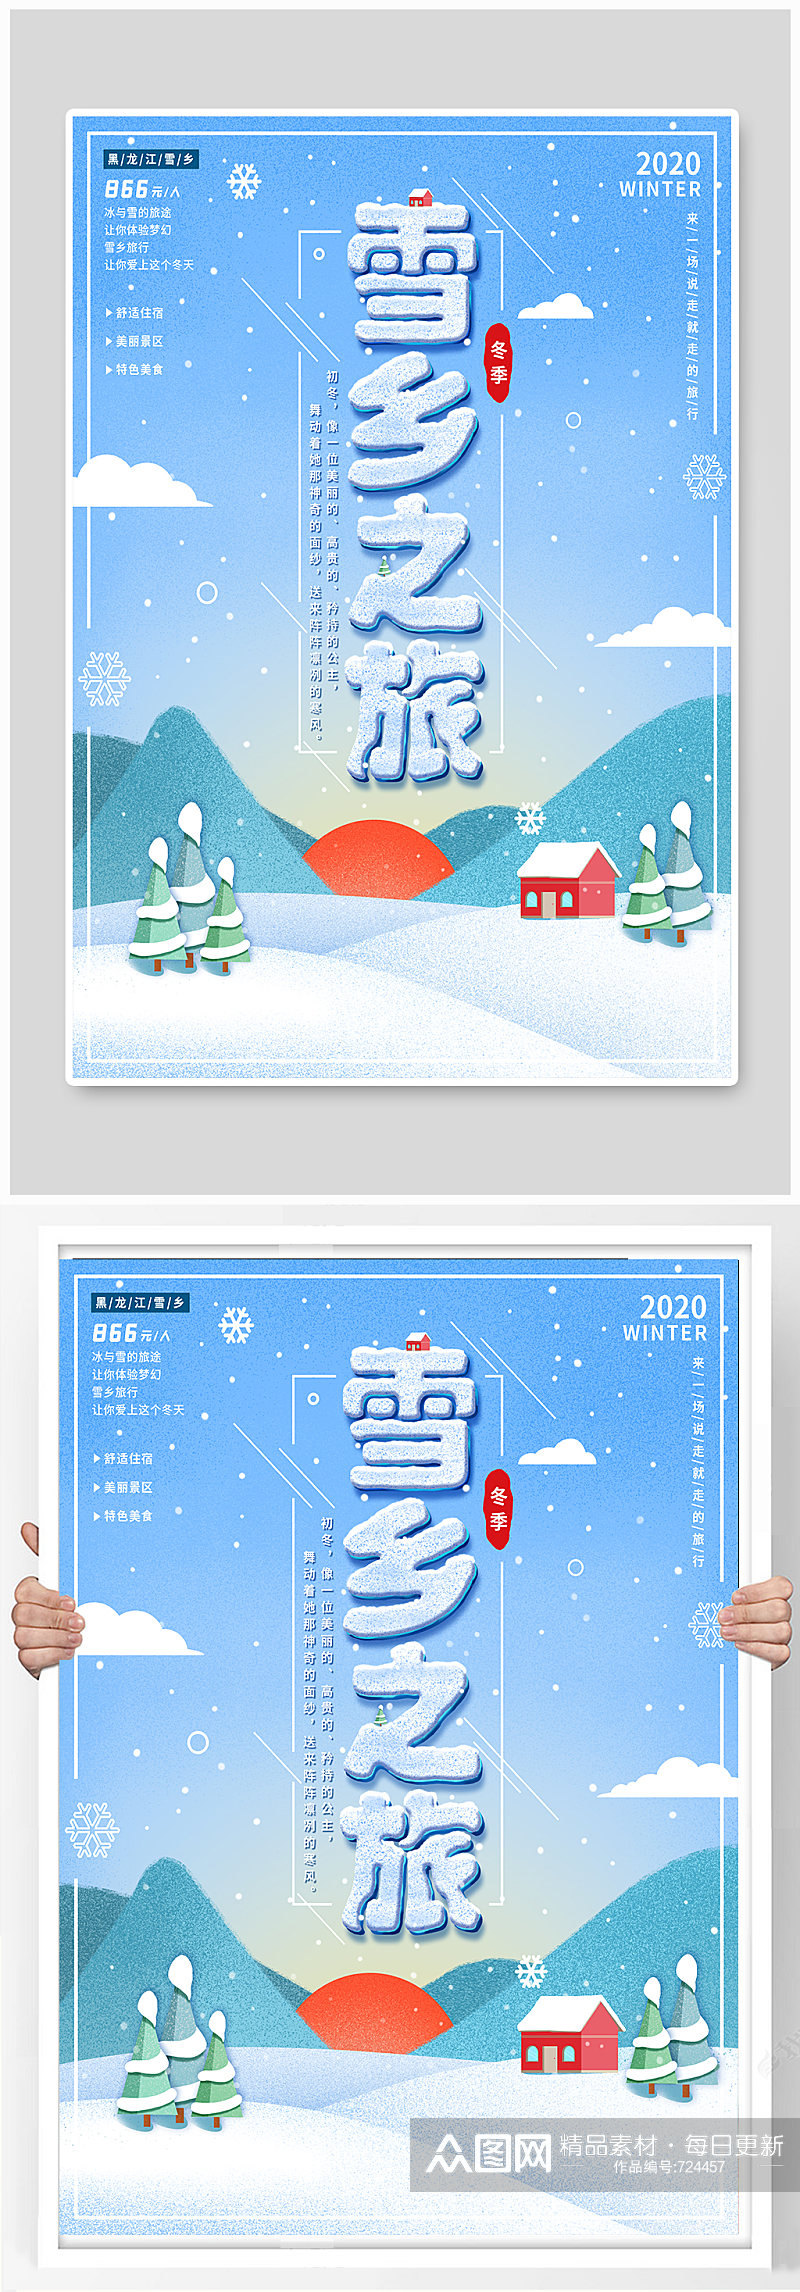 手绘风冬季雪乡哈尔滨旅游海报素材